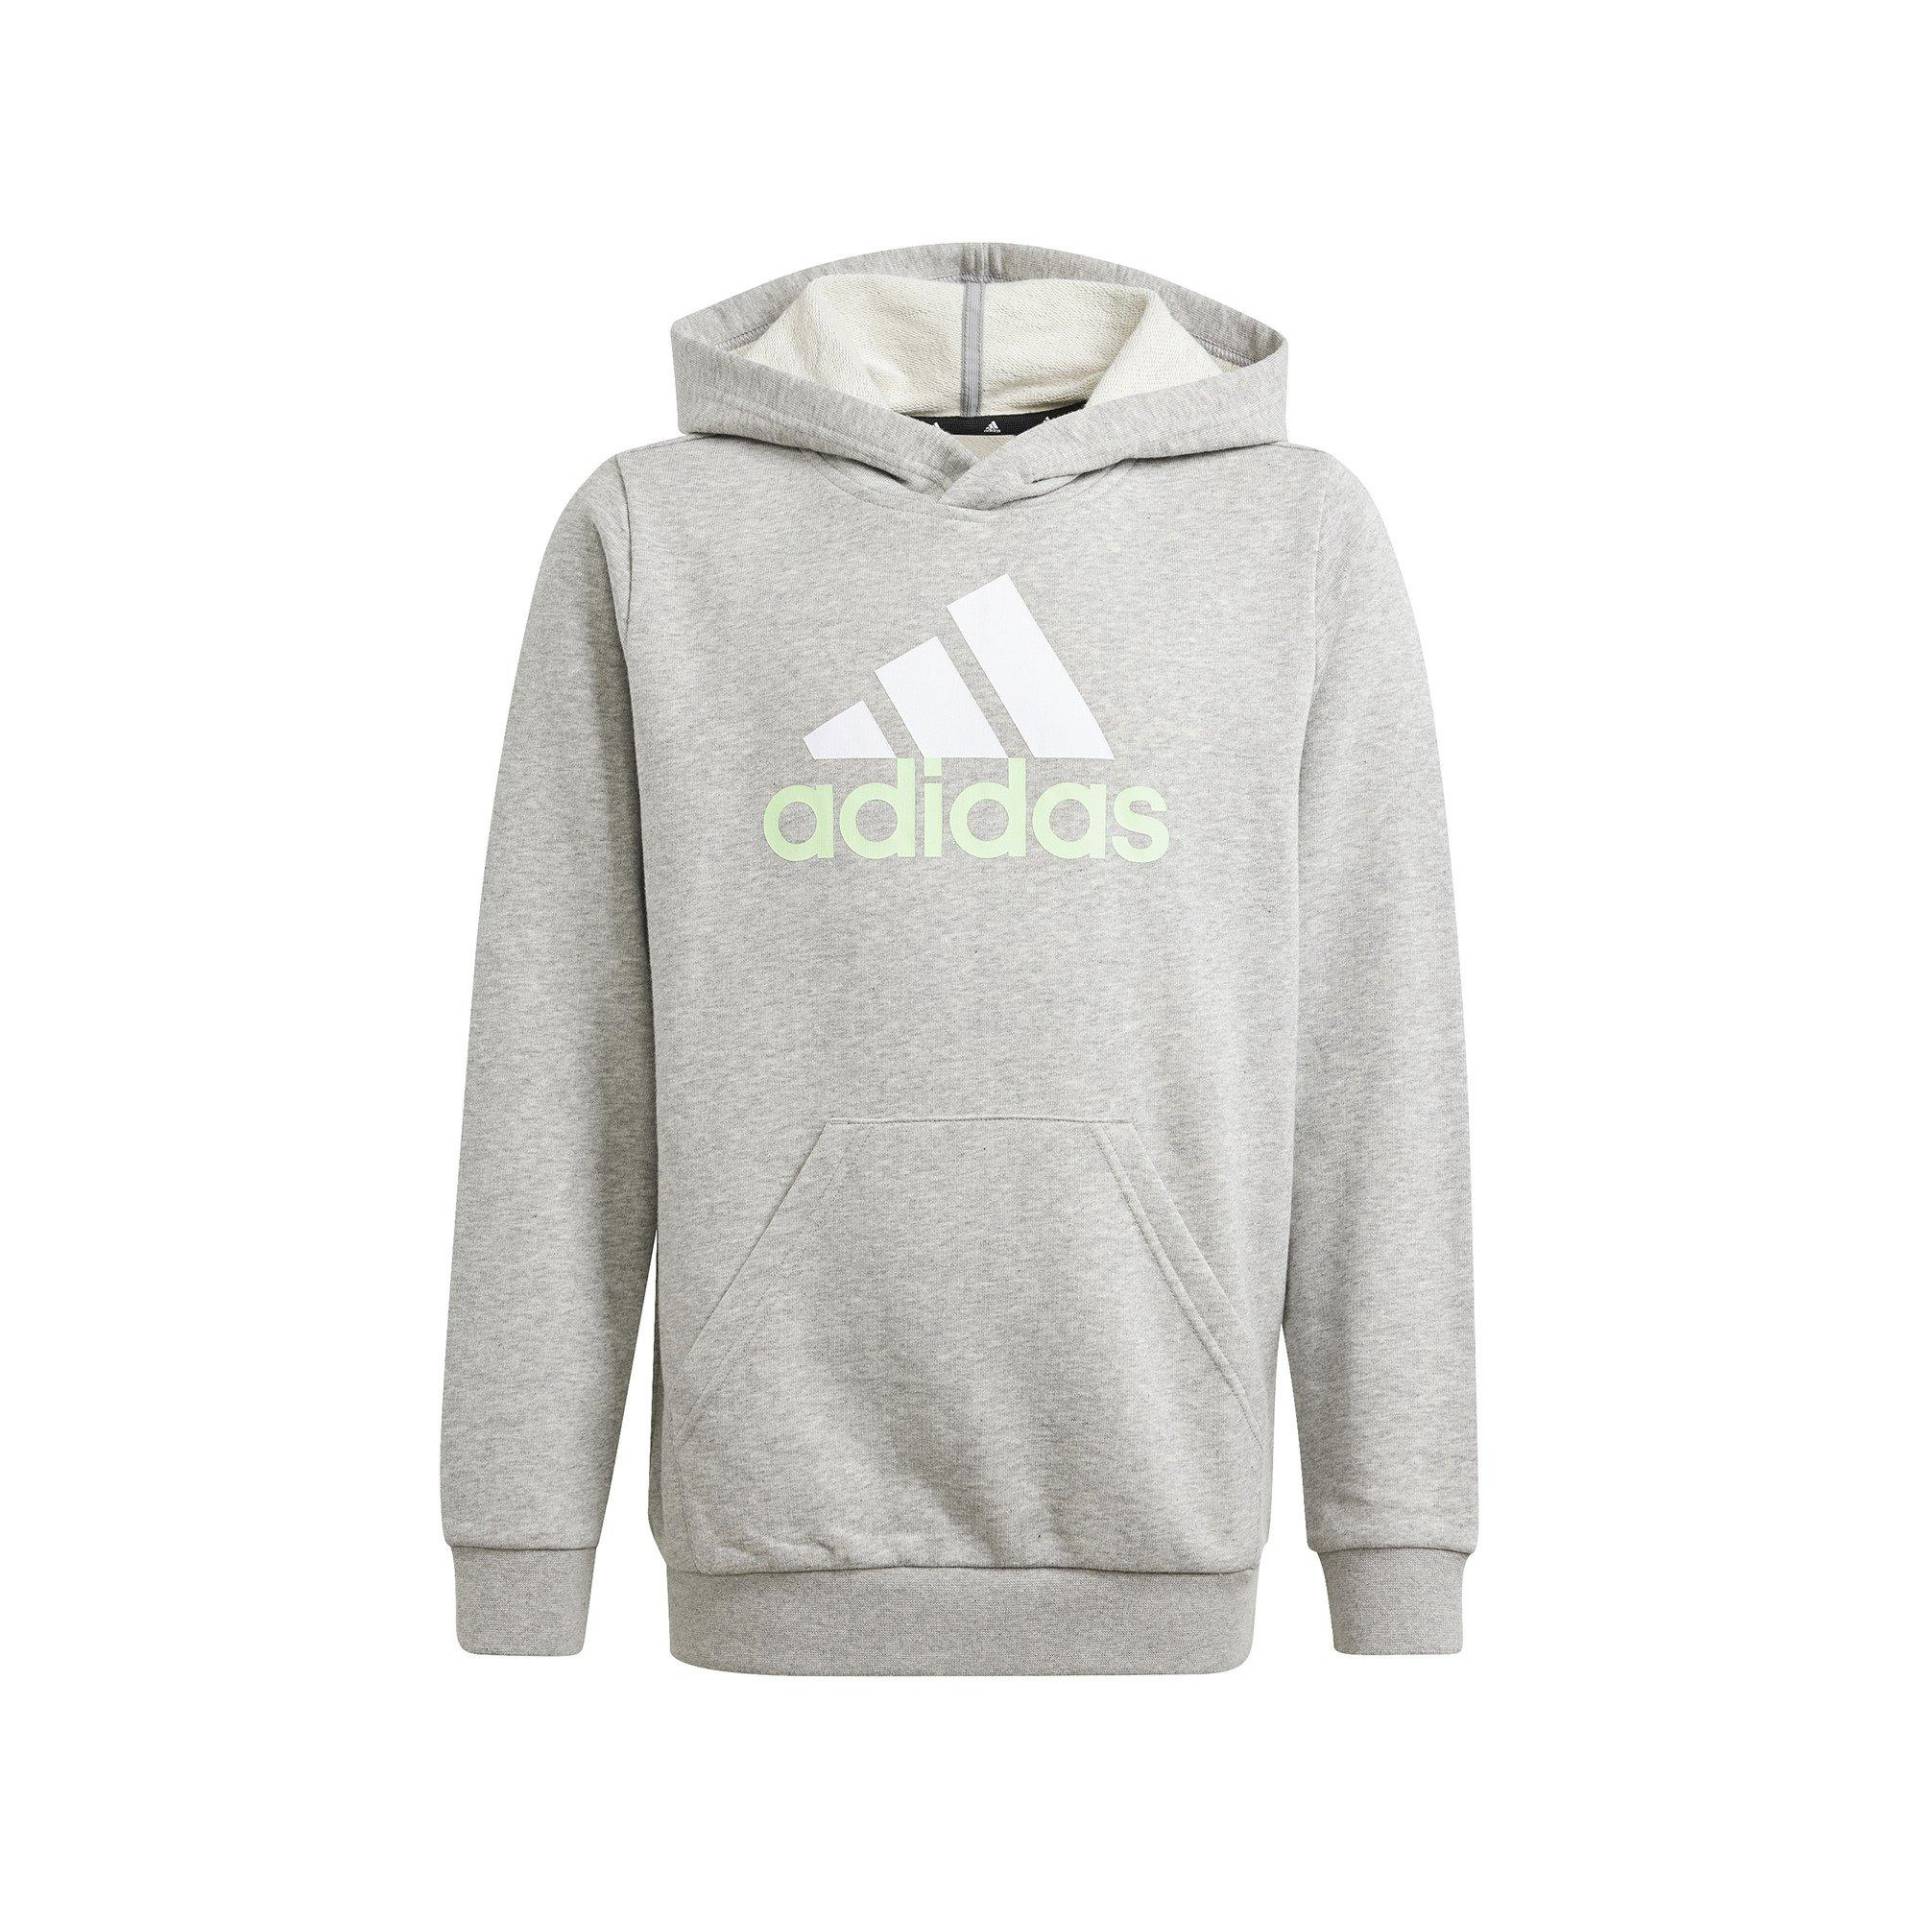 adidas Sweatshirt Jungen Grau Melange 140 von Adidas